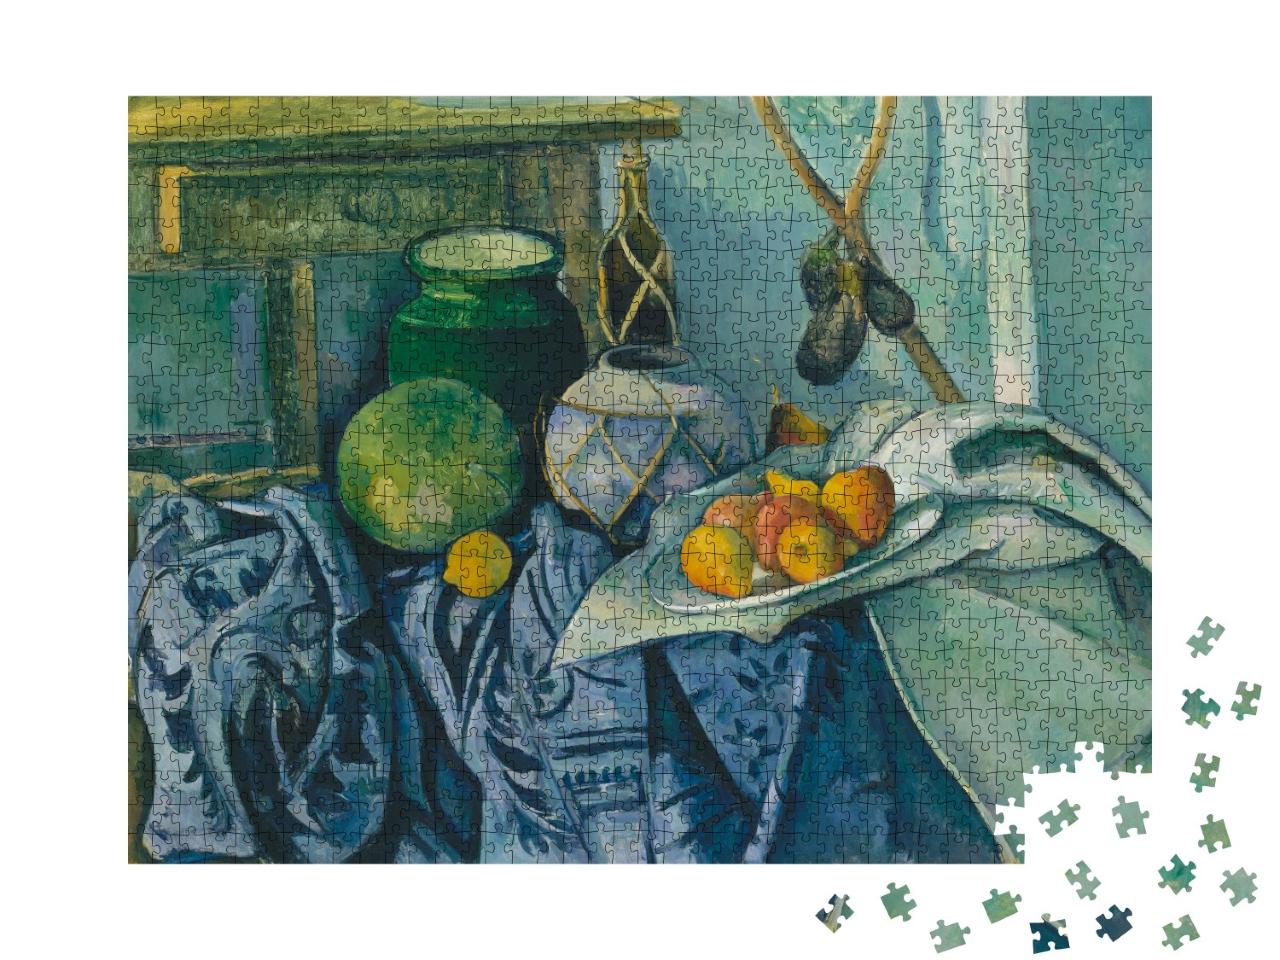 Puzzle 1000 Teile „Paul Cézanne - Stilleben mit einem Ingwerglas und Auberginen“